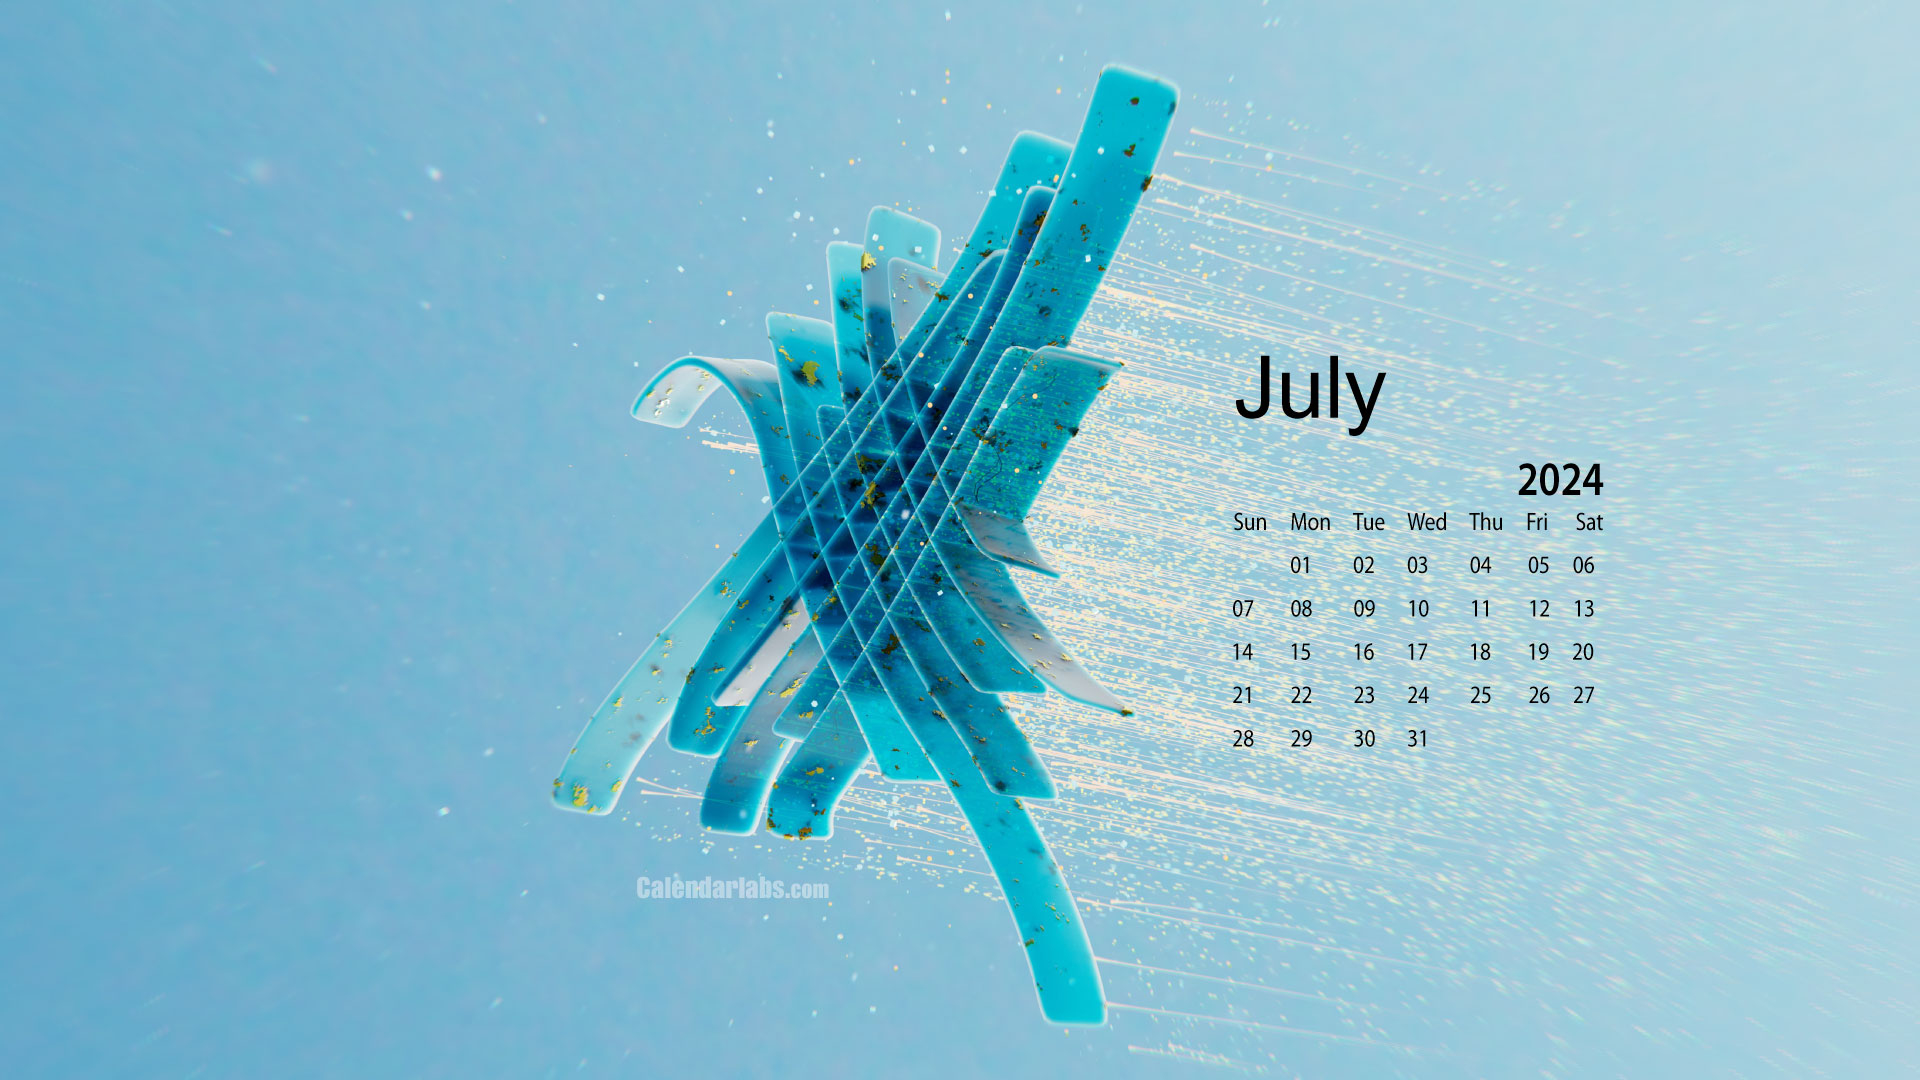 July 2024 Desktop Wallpaper Calendar - Calendarlabs | Calendar Wallpaper July 2024